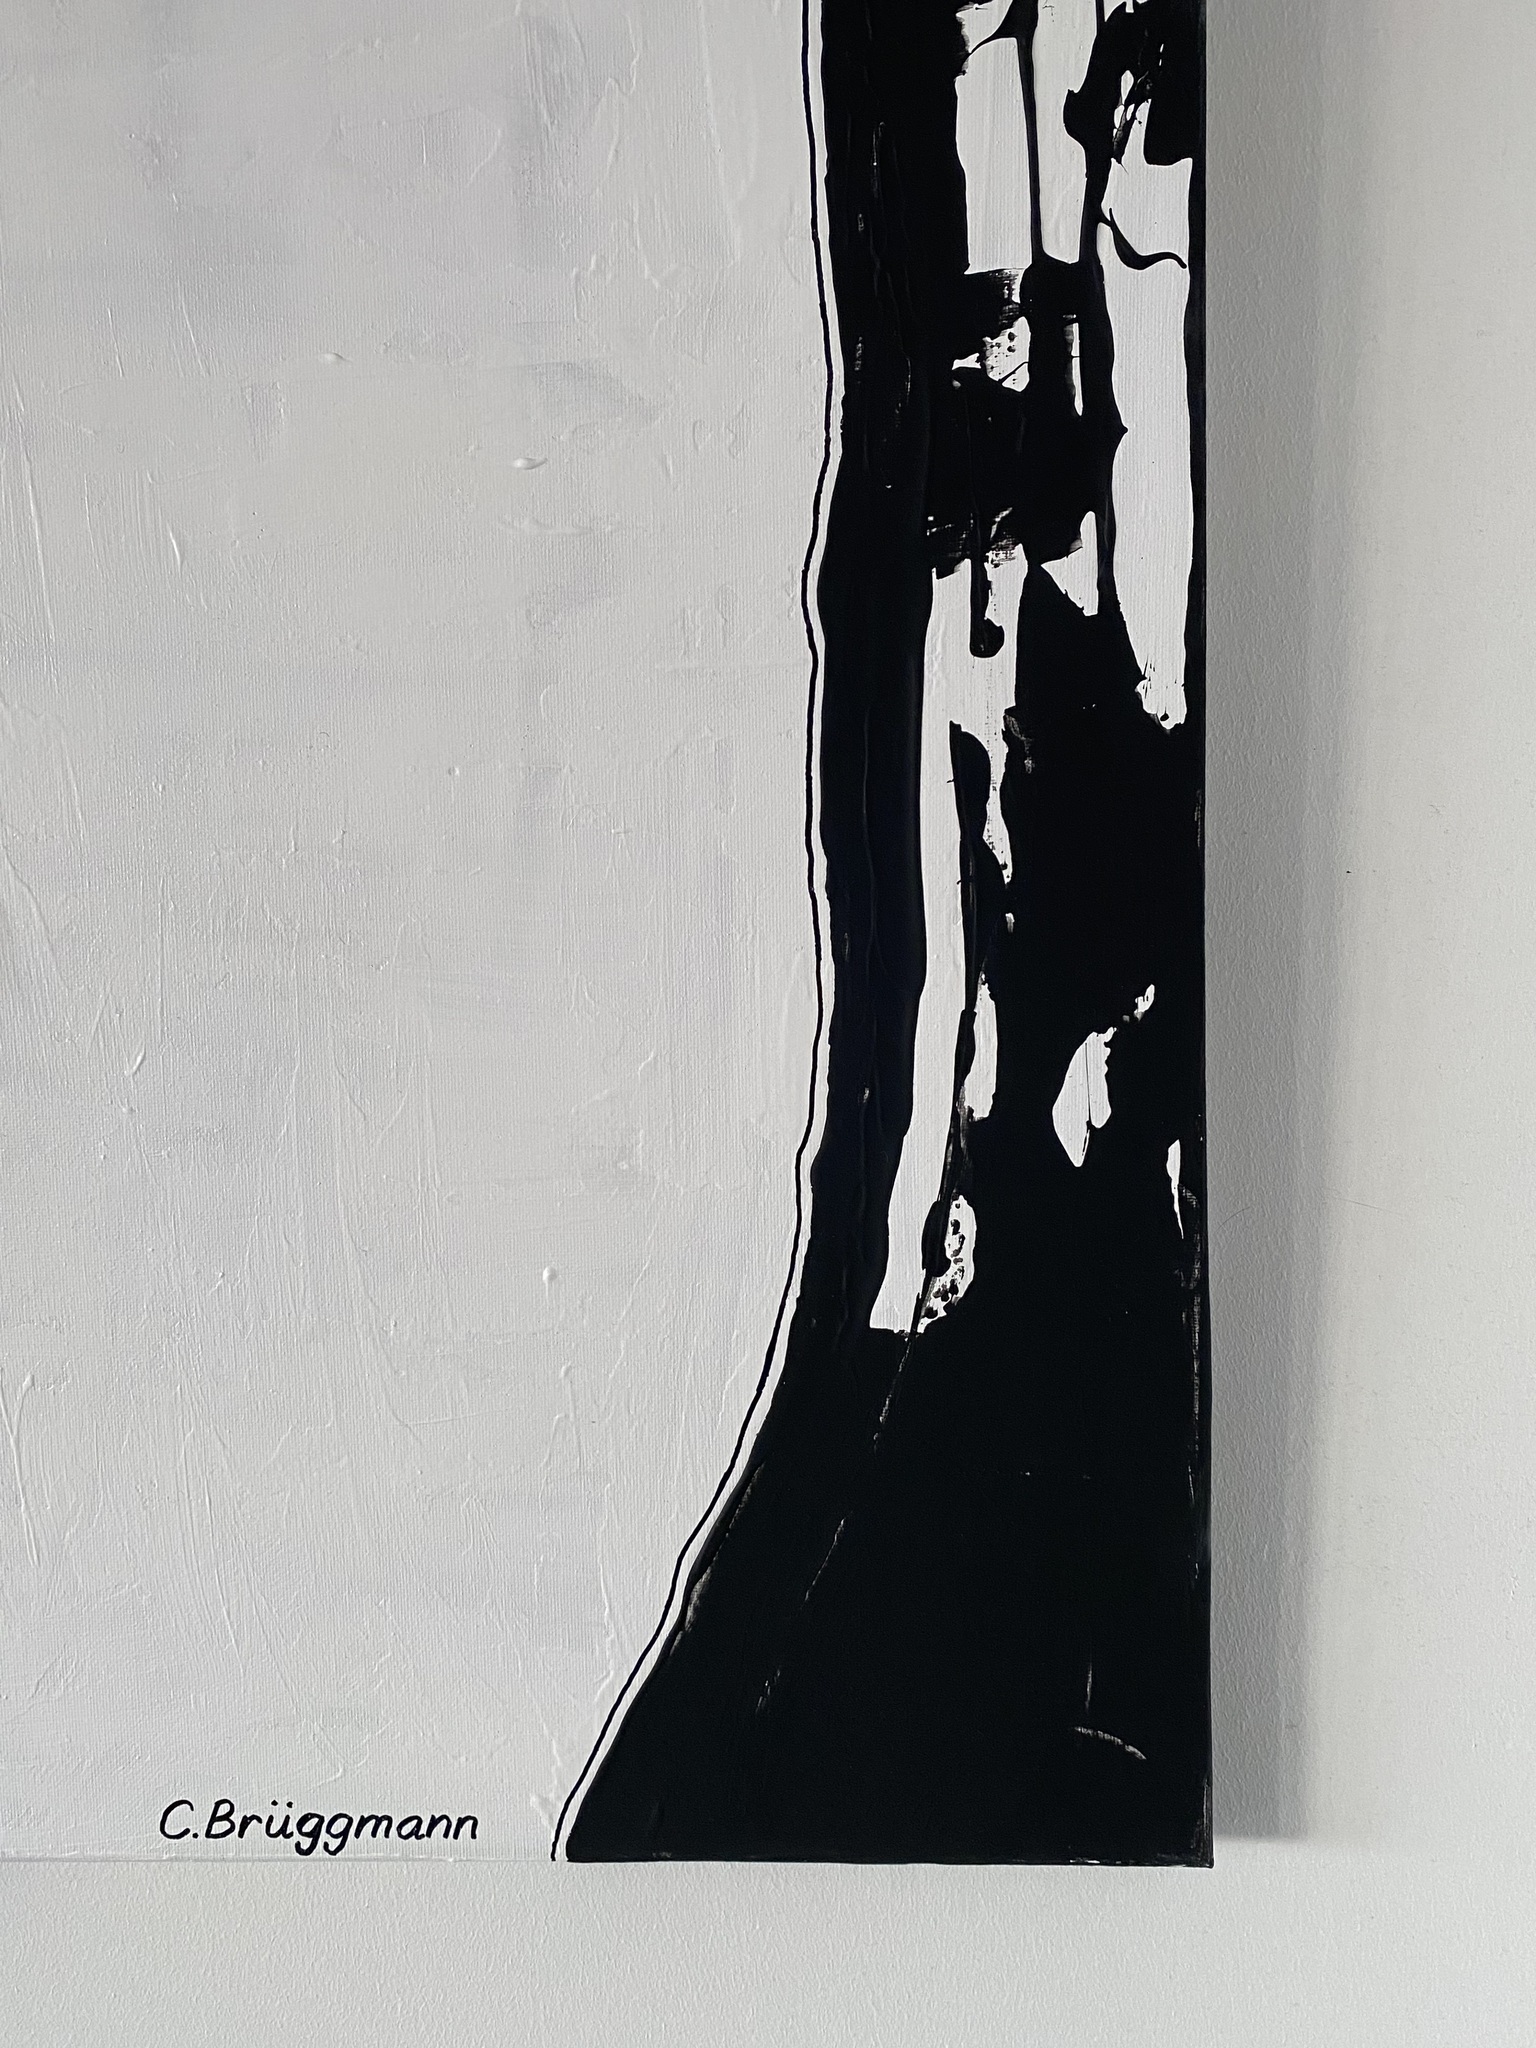 Stilren tavla i svart och vitt som ger snygga kontraster till ditt hem. Abstrakt målning av C.Brüggmann.